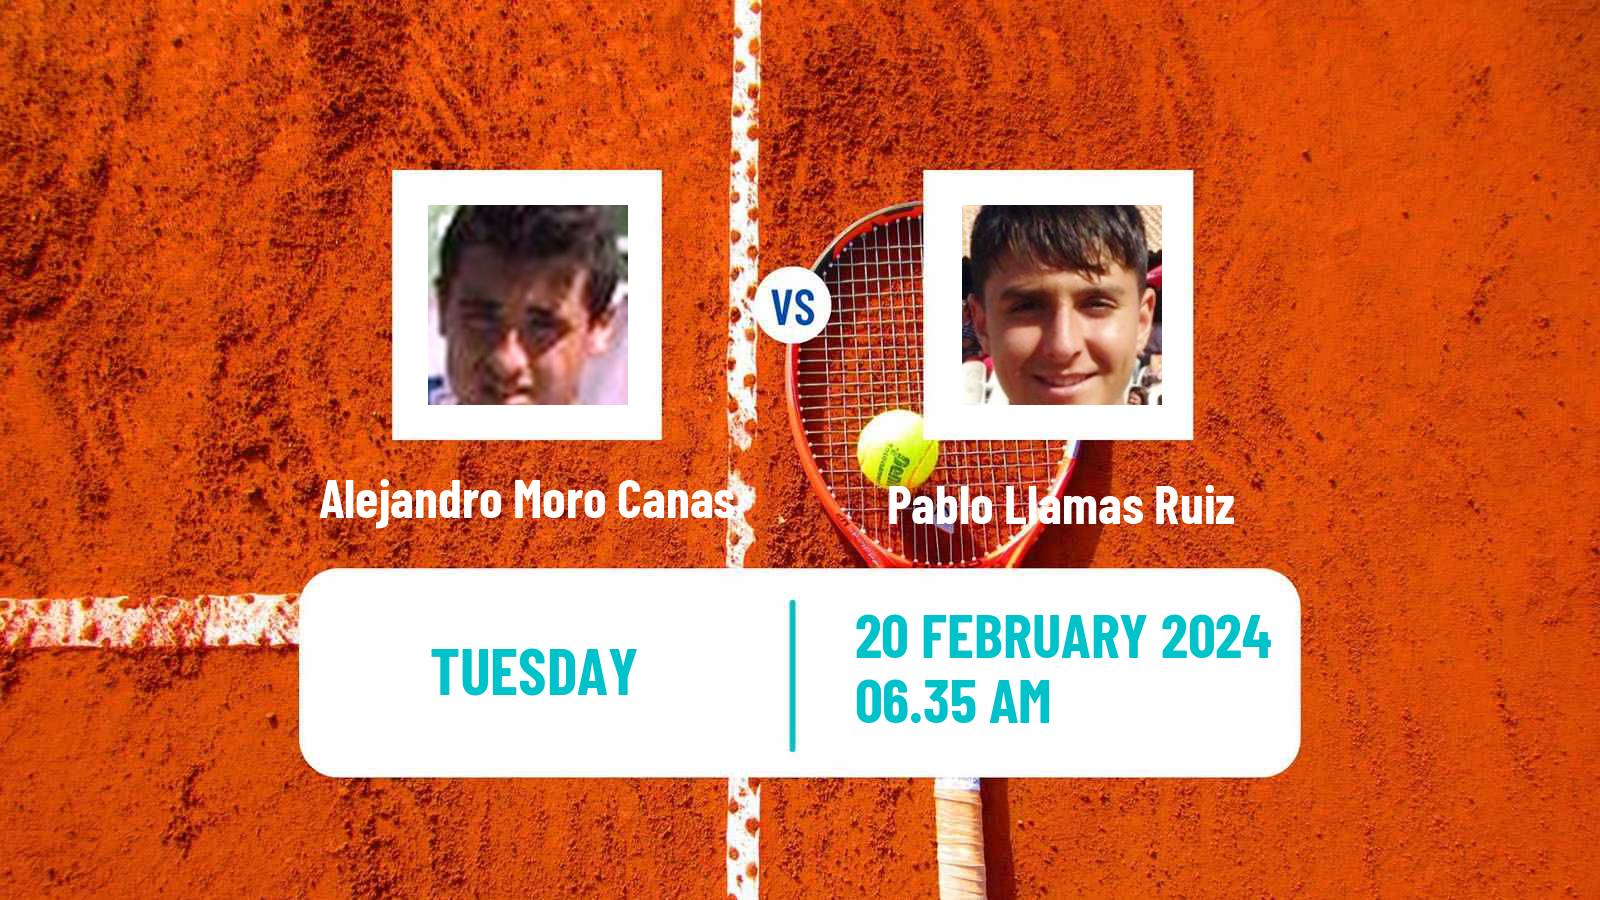 Tennis Tenerife 2 Challenger Men Alejandro Moro Canas - Pablo Llamas Ruiz